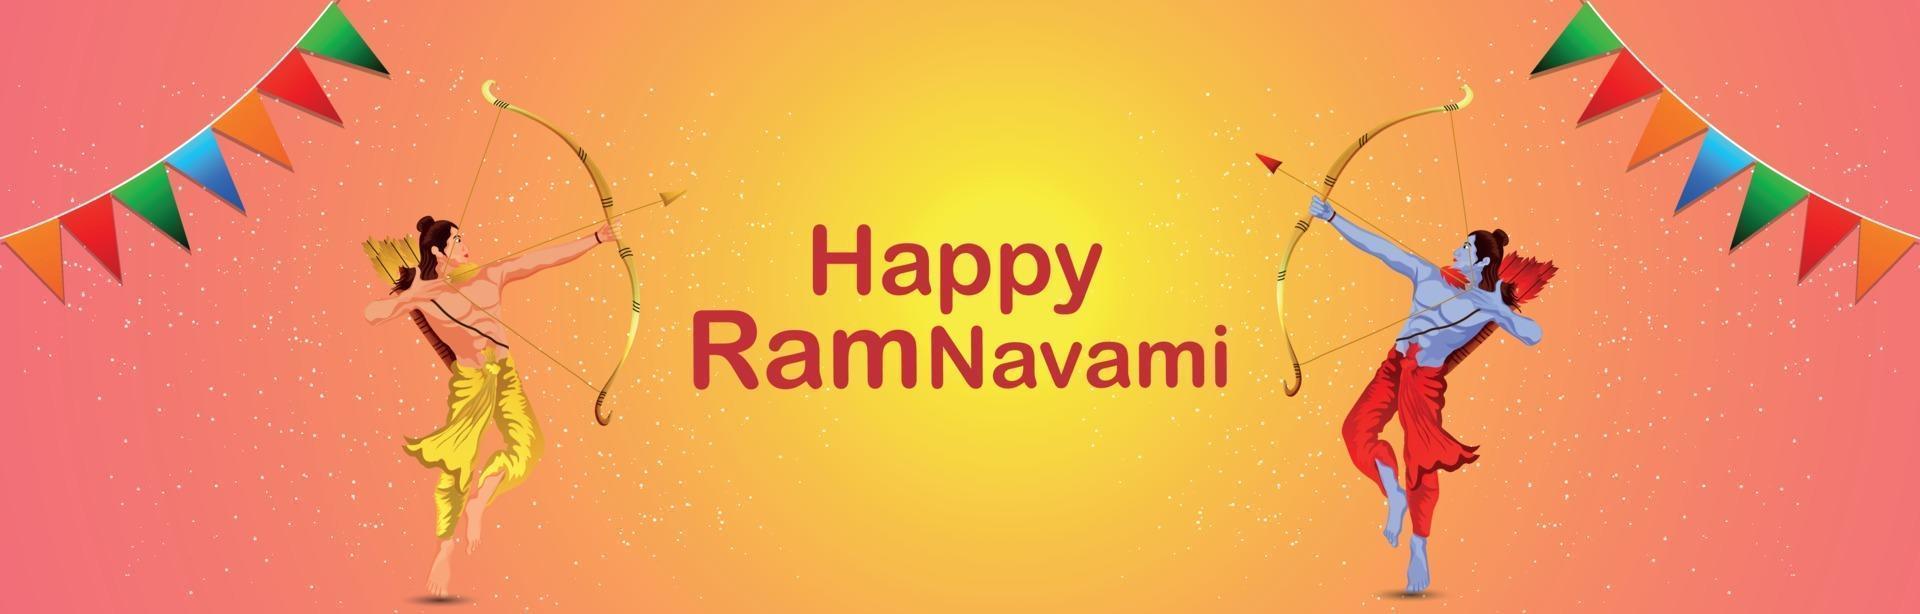 Ramnavami Feier Banner mit kreativer Illustration von Rama vektor